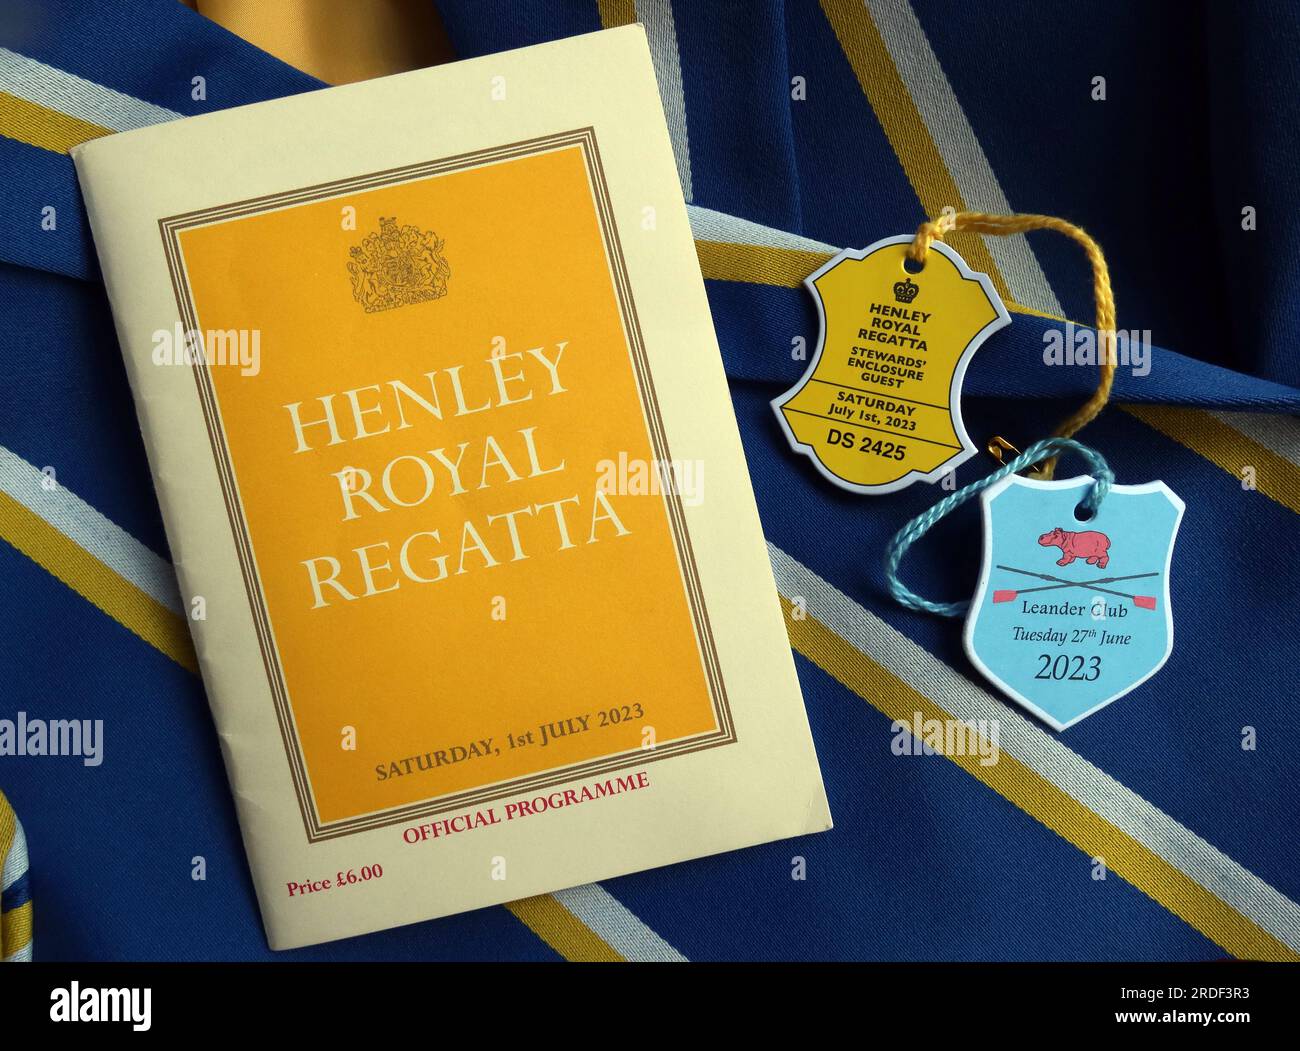 Régate royale Henley-on-Thames, blazer, programme officiel et entrée au Leander Club et invité dans l'enceinte des stewards Banque D'Images